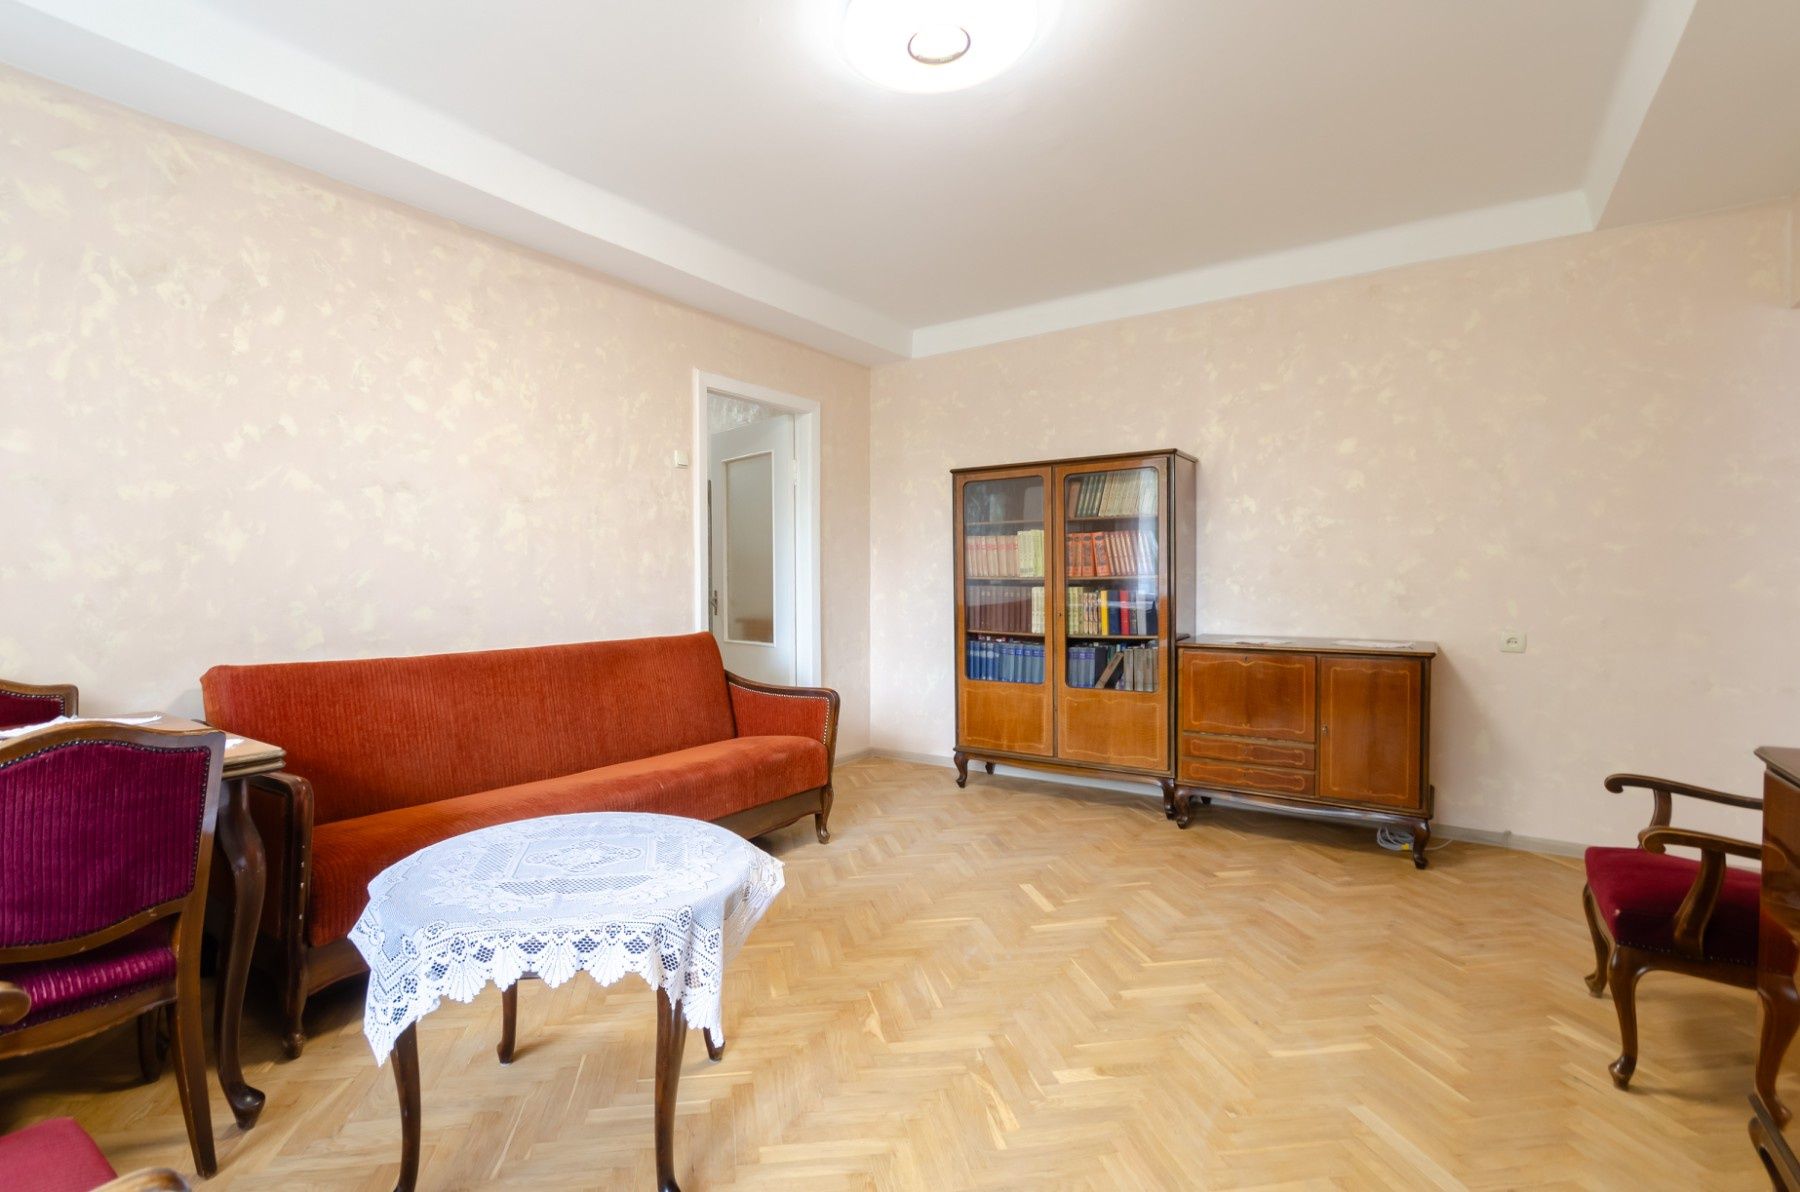 Перша здача ,3 кімнатна, центр (м. Льва Толстого)  Ремонт Без комісії